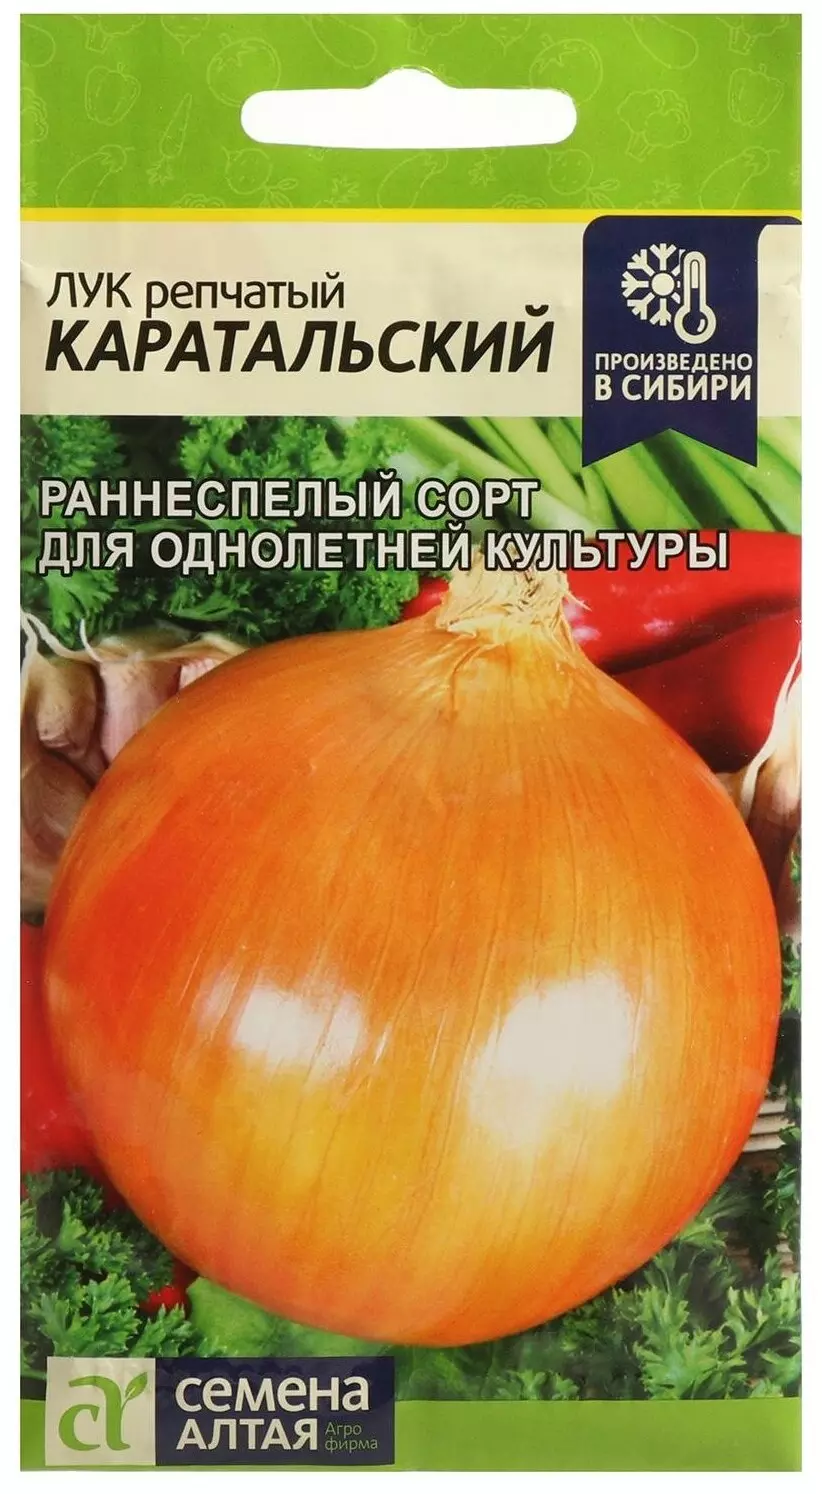 Семена Лук репчатый Каратальский/Сем Алт/цп 1 гр.